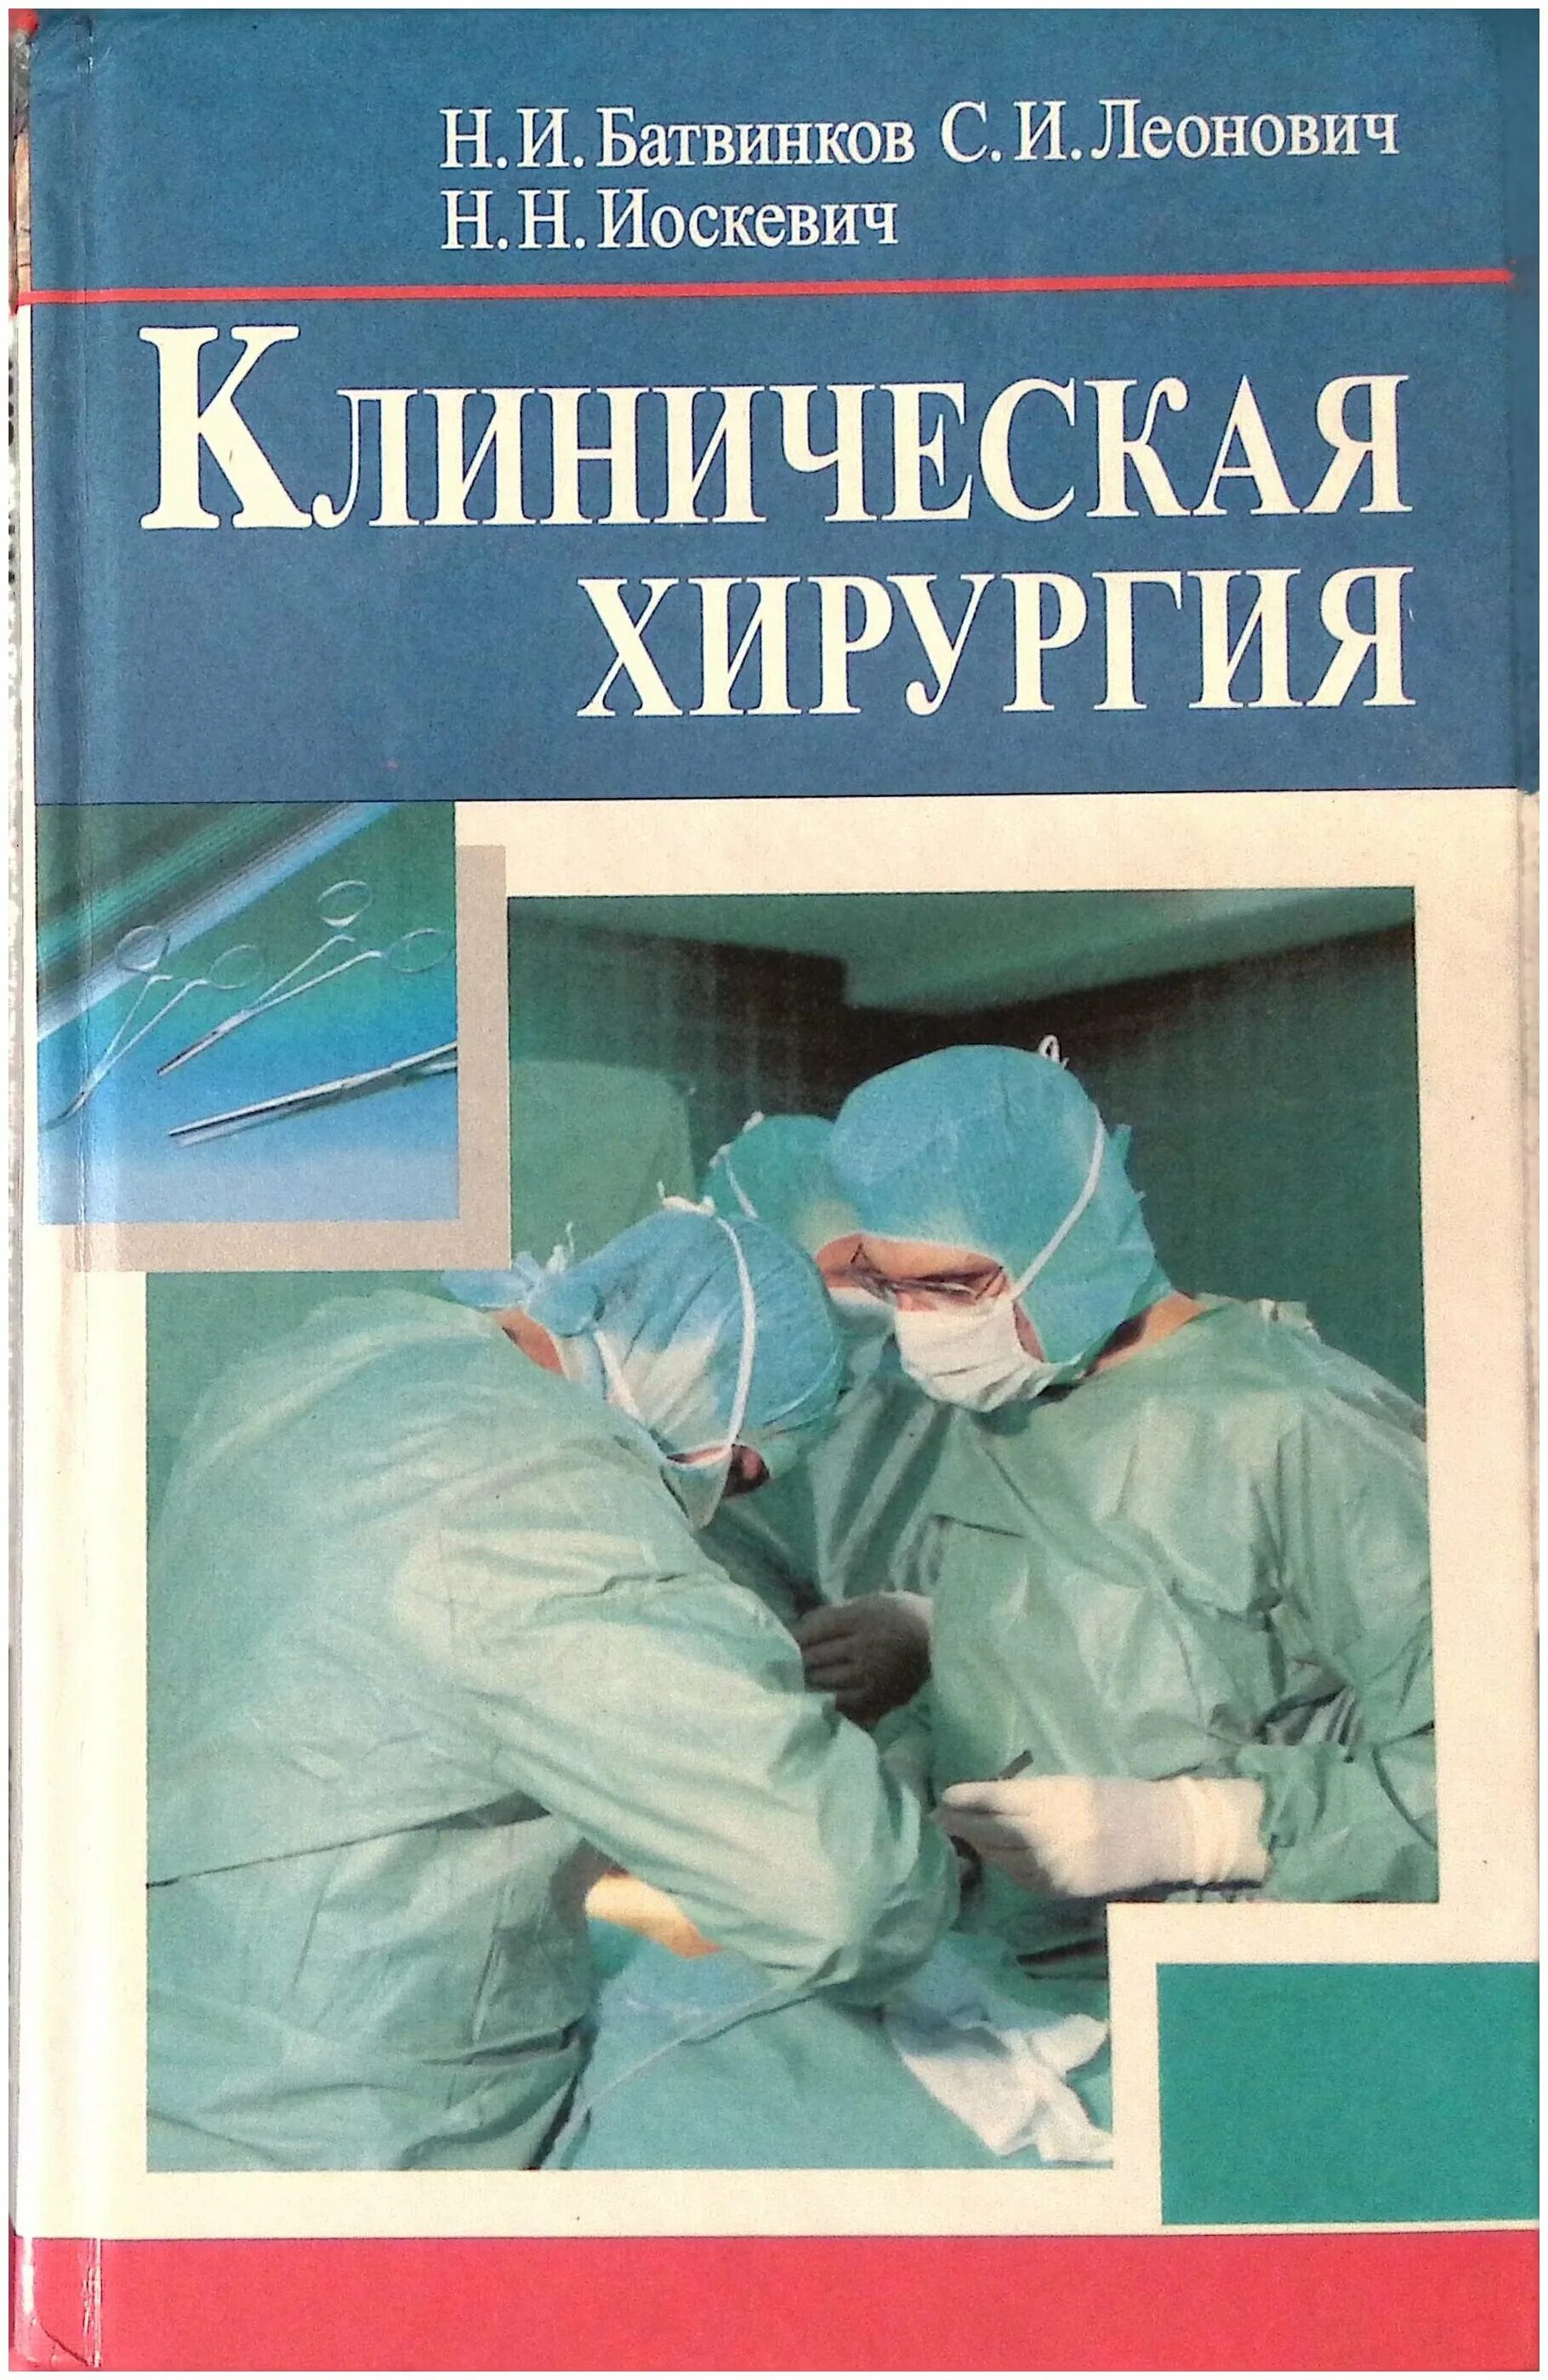 Читать книгу операция. Клиническая хирургия. Хирургические болезни. Руководство по хирургии. Хирургические болезни хирургии.